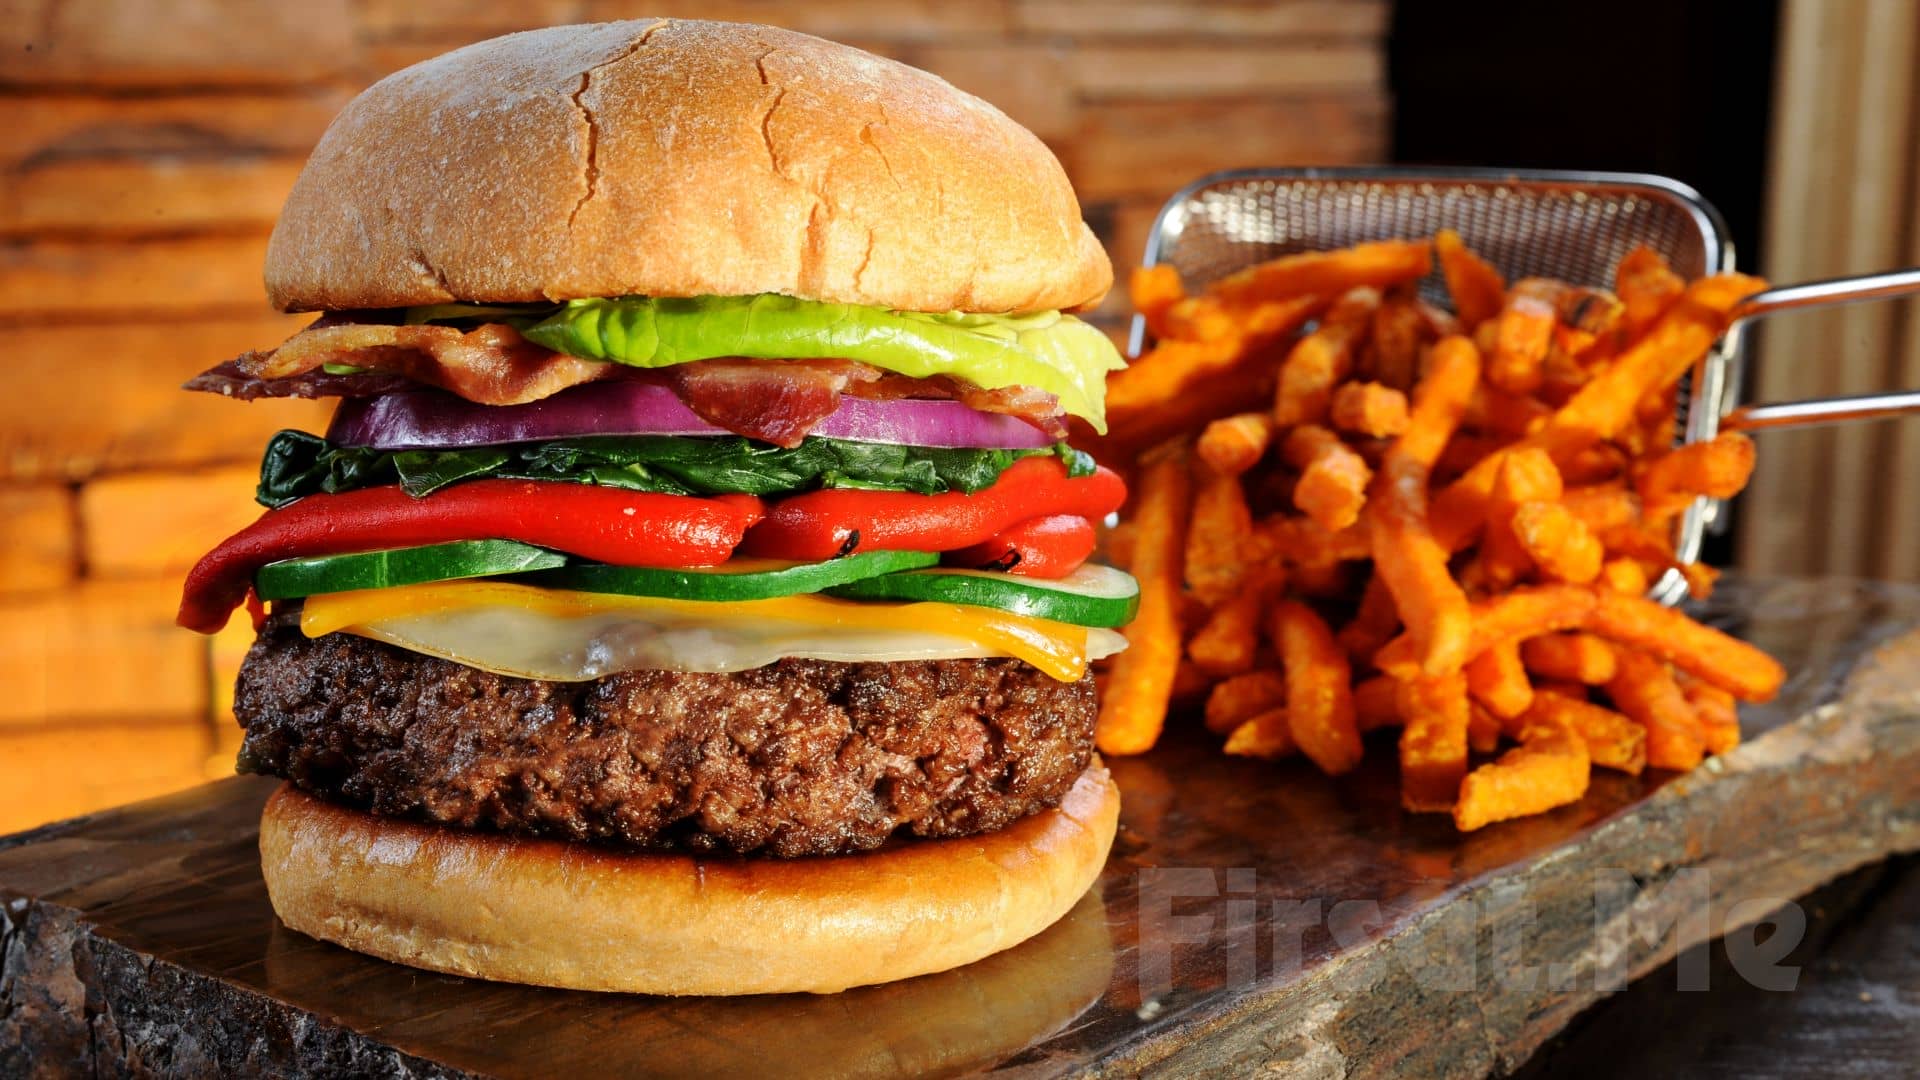 Beeves Burger Menü Fiyatları Fiyatı Nedir ? 2021 Güncel menü fiyatları!